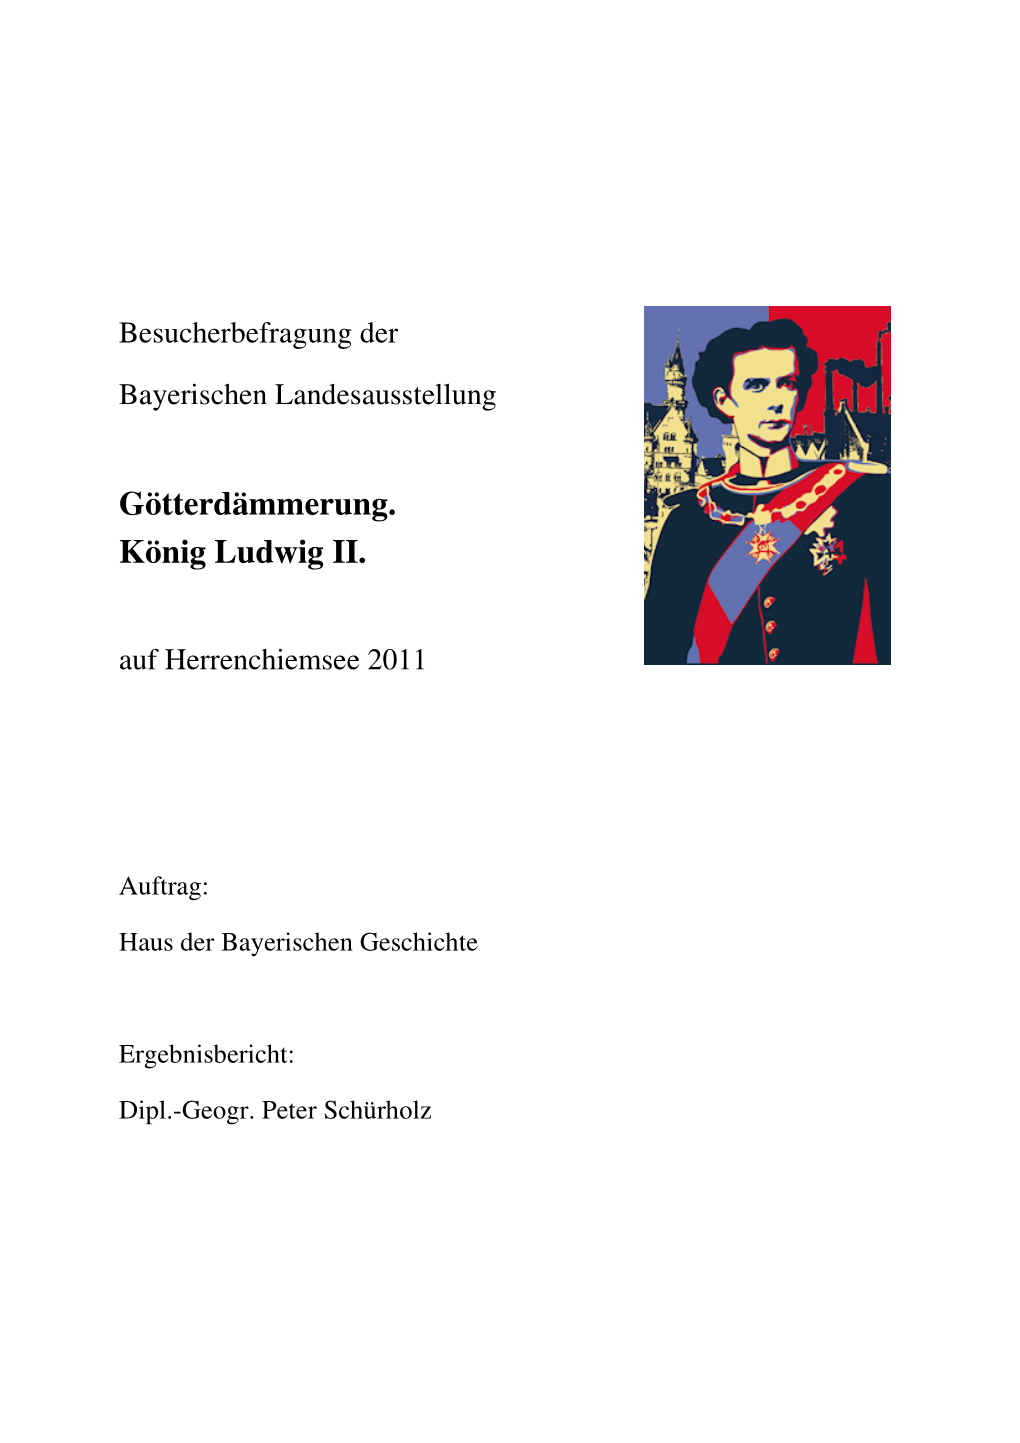 Götterdämmerung. König Ludwig II